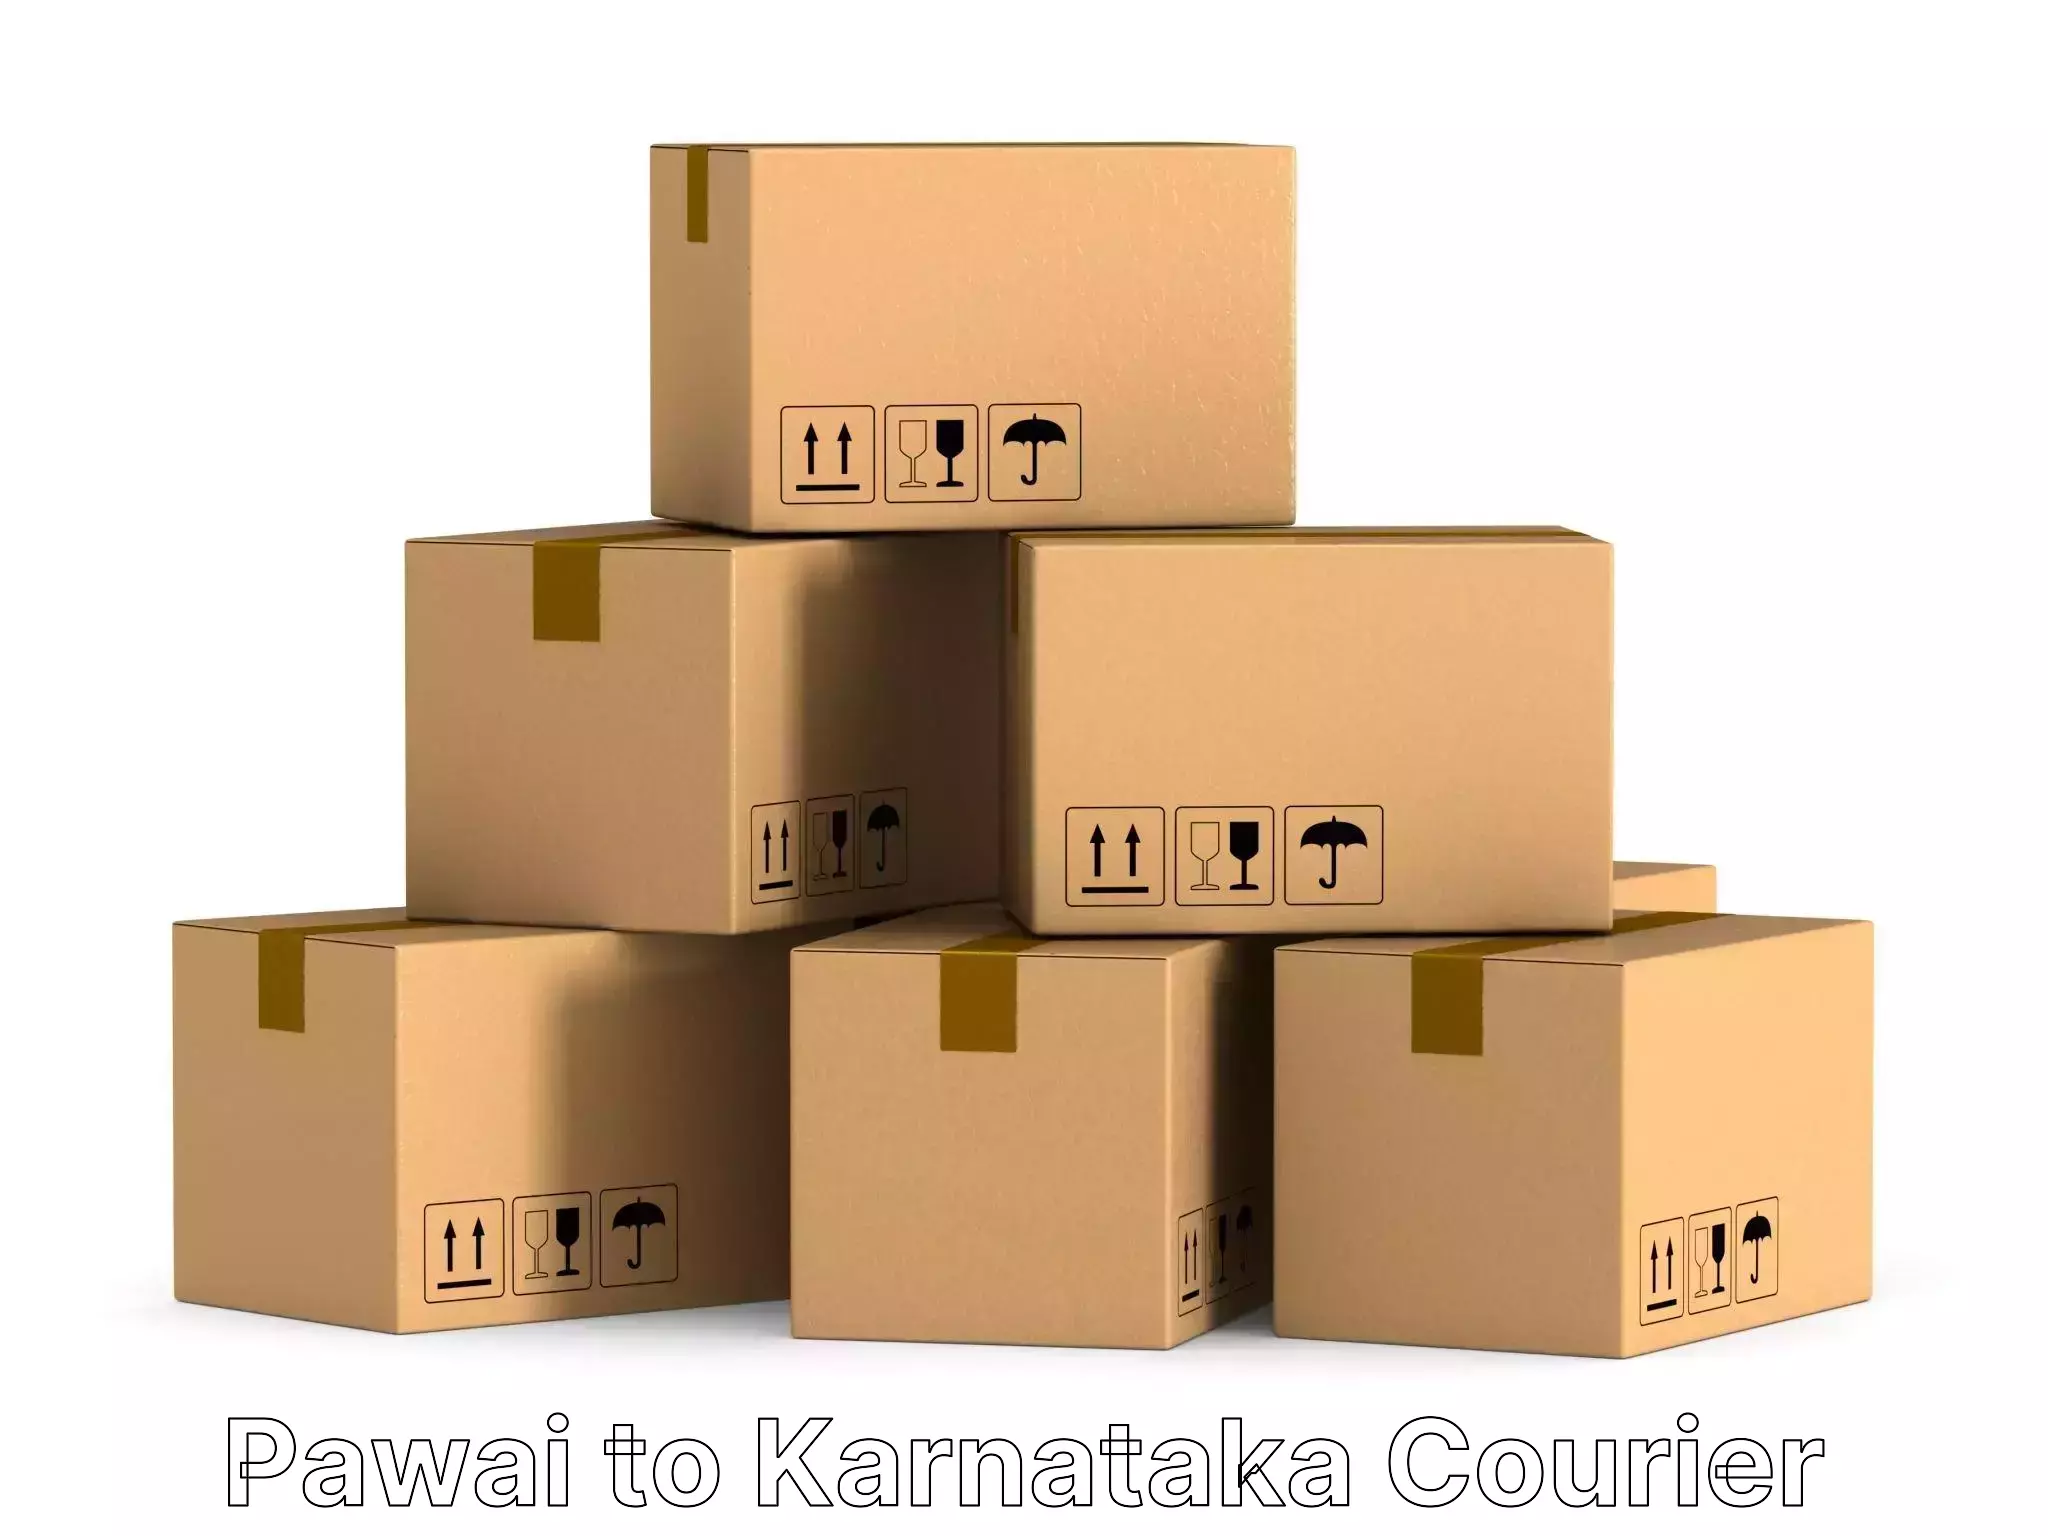 Furniture moving experts Pawai to Karnataka